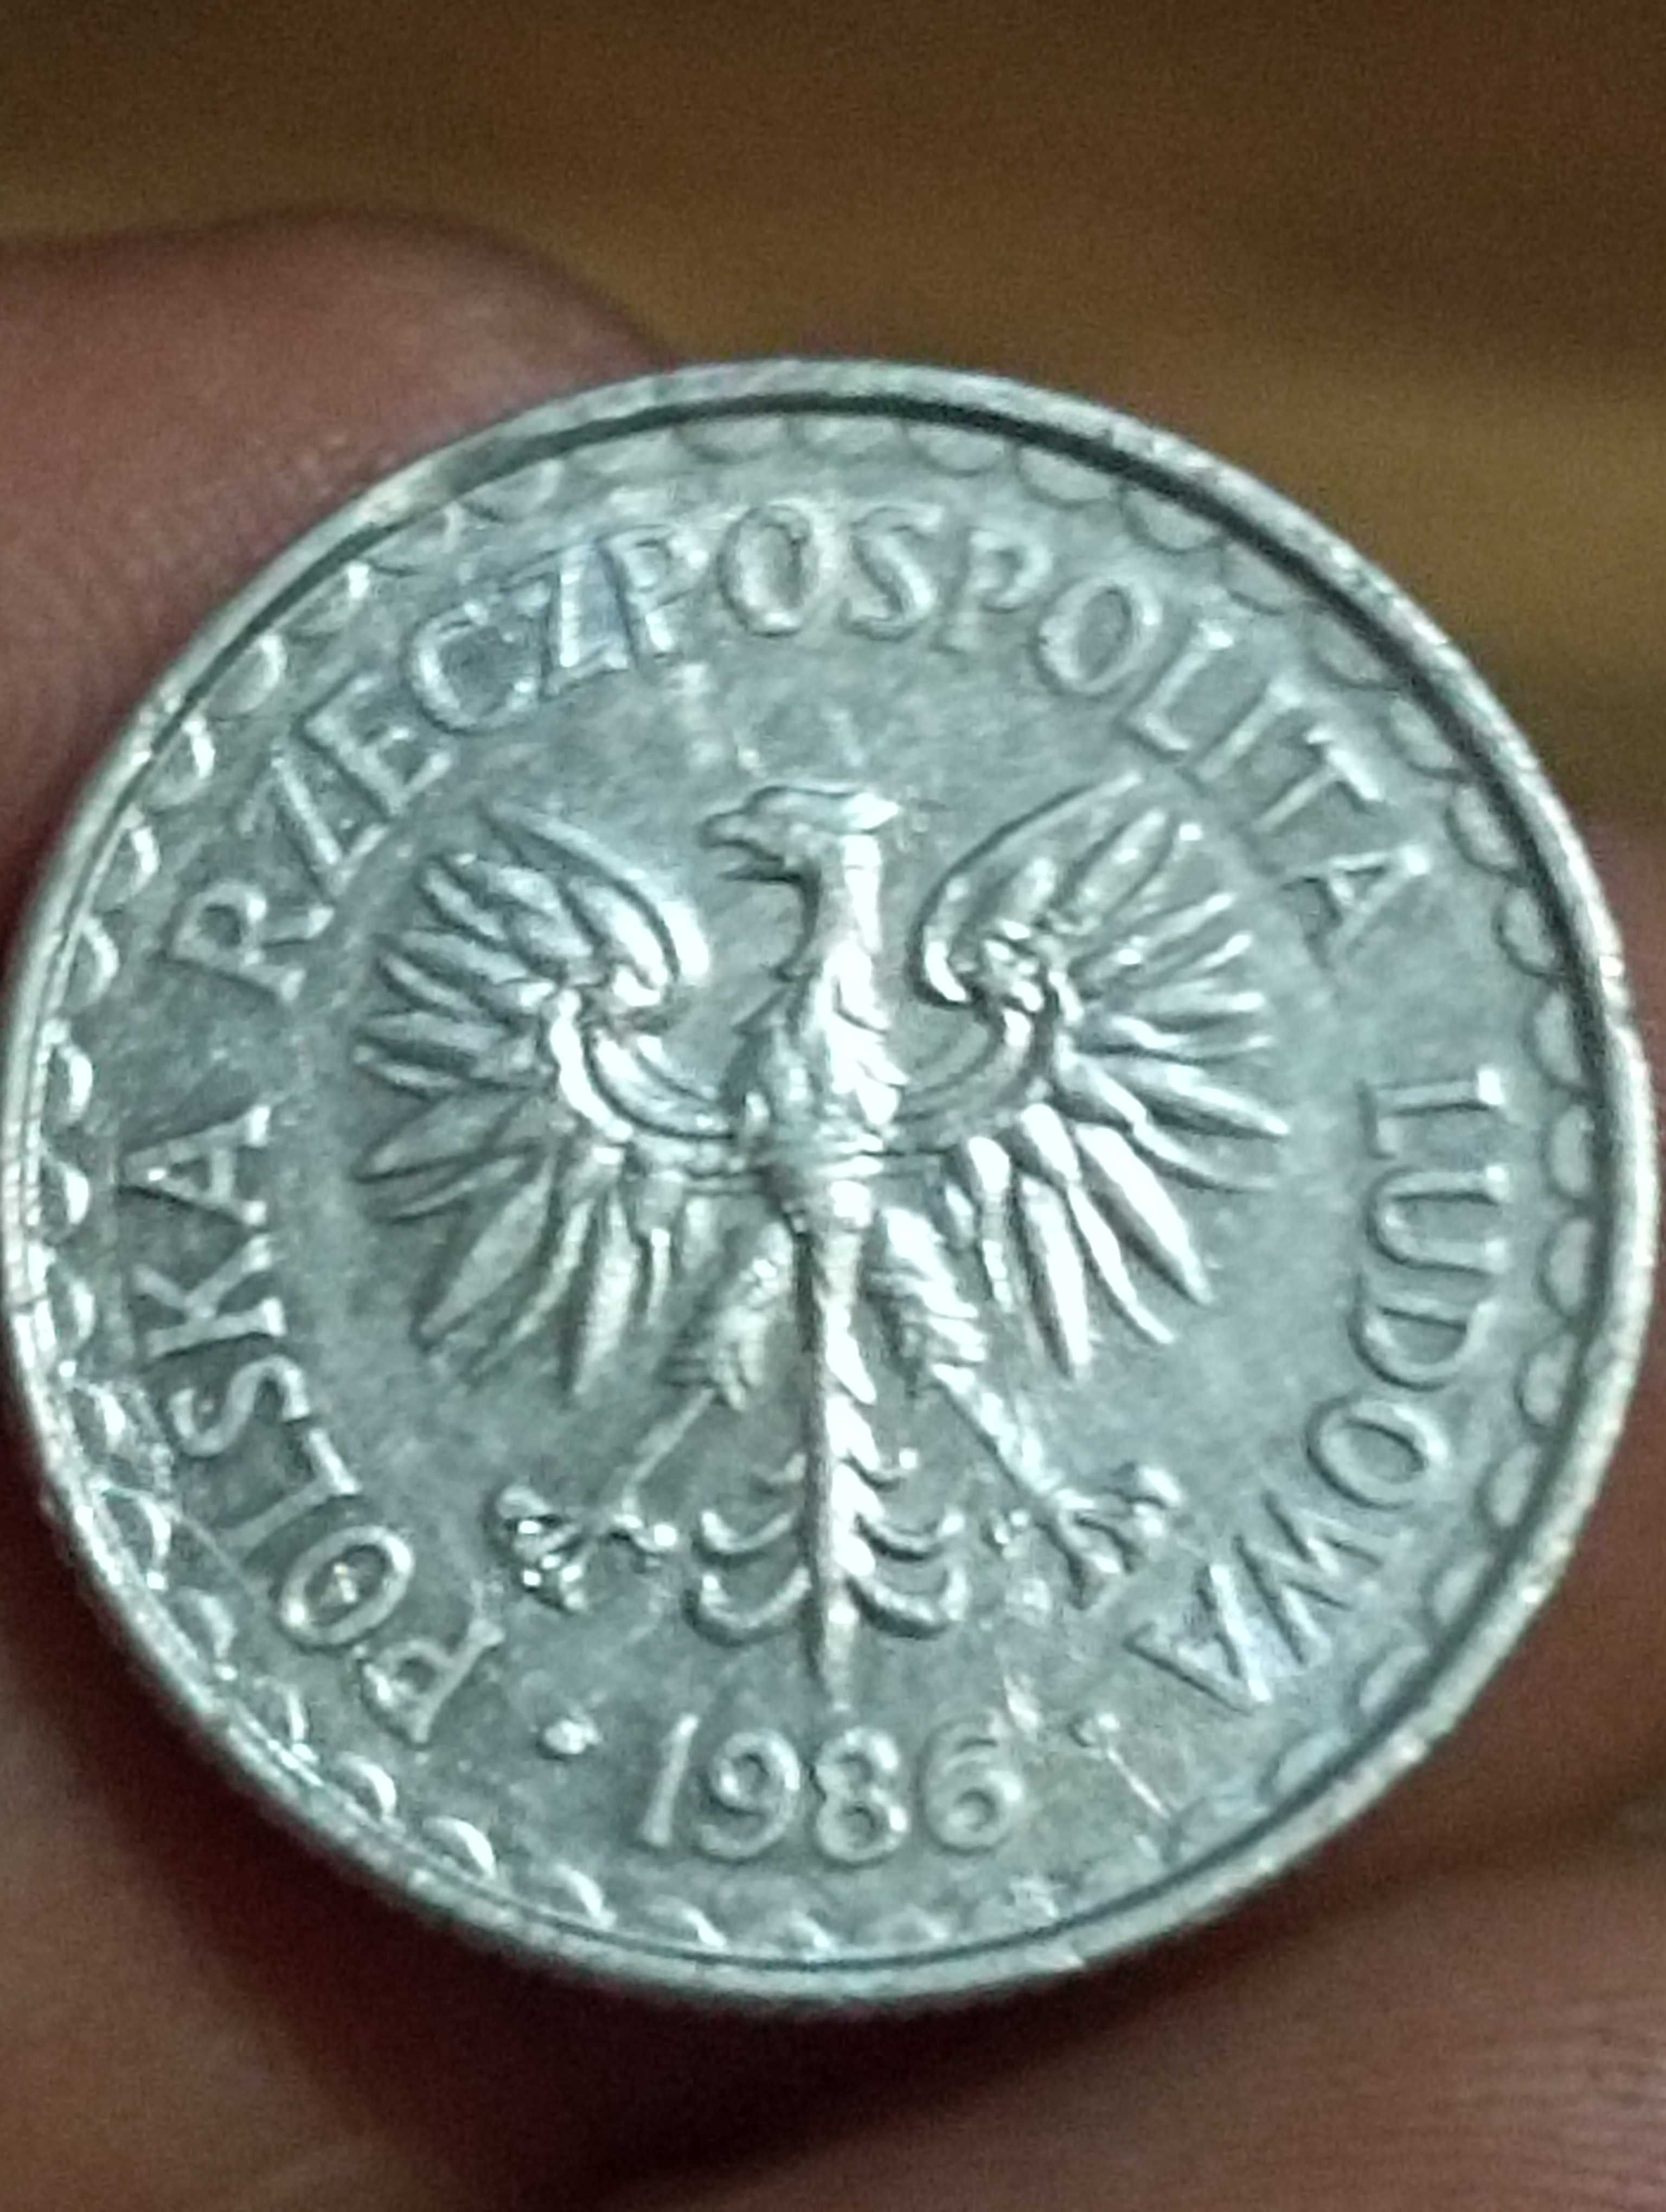 Sprzedam monetę 1 zloty 1986 rok końcówka blachy